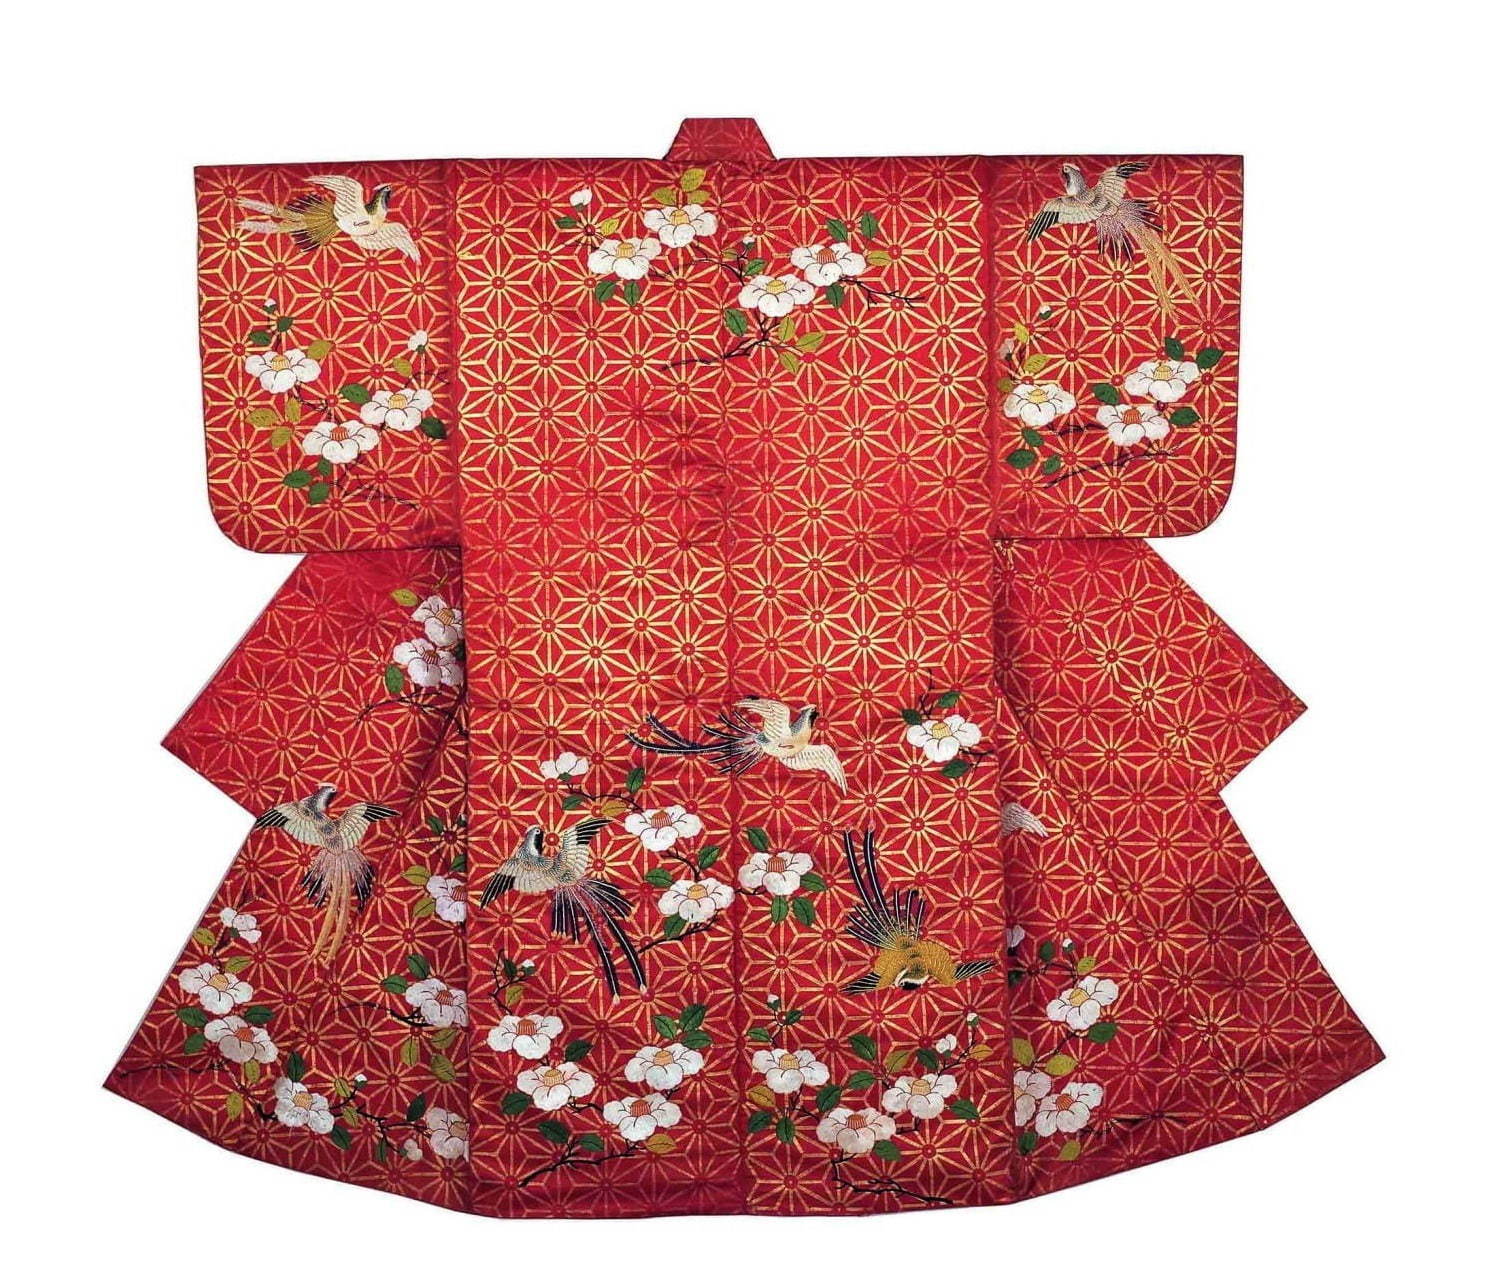 「能装束と歌舞伎衣裳」展、文化学園服飾博物館で - 江戸・明治・現代の華やかな芸能衣裳 | 写真